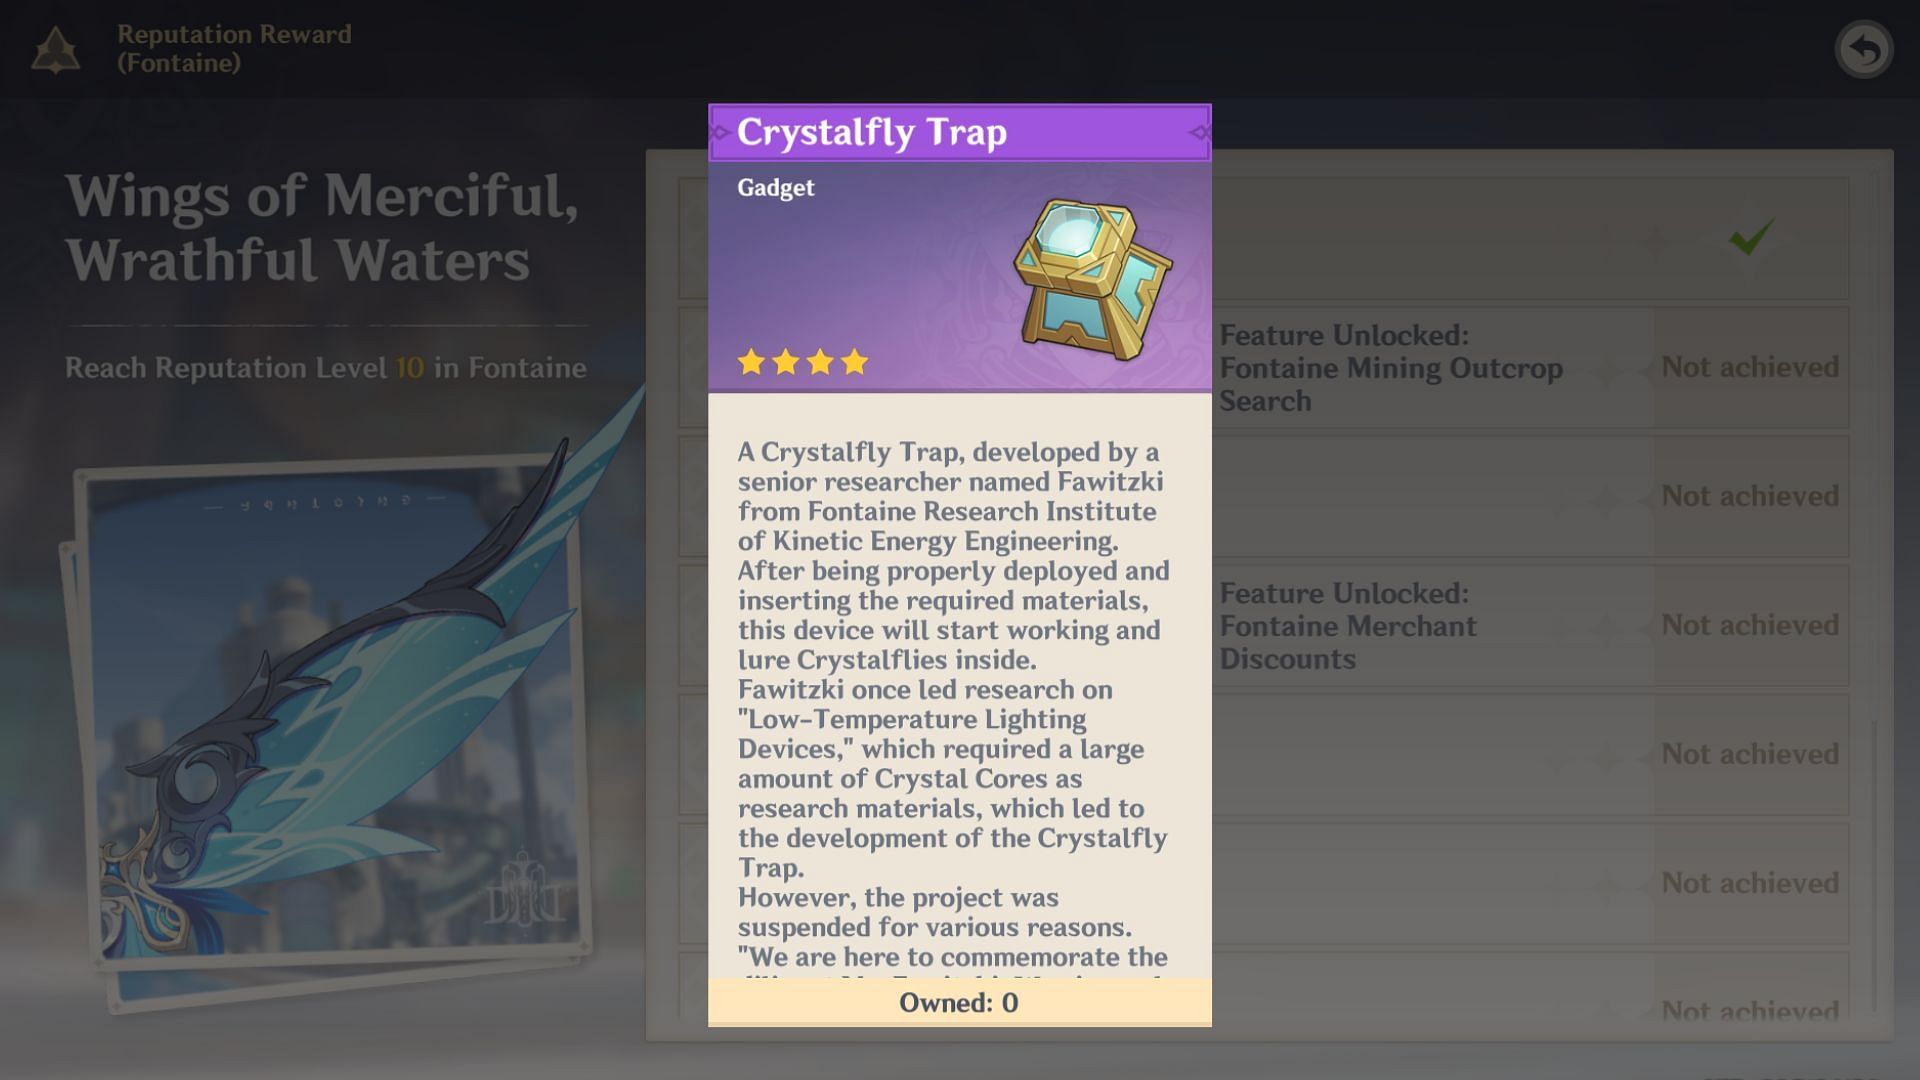 Описание Crystalfly Trap в игре (Изображение через HoYoverse)